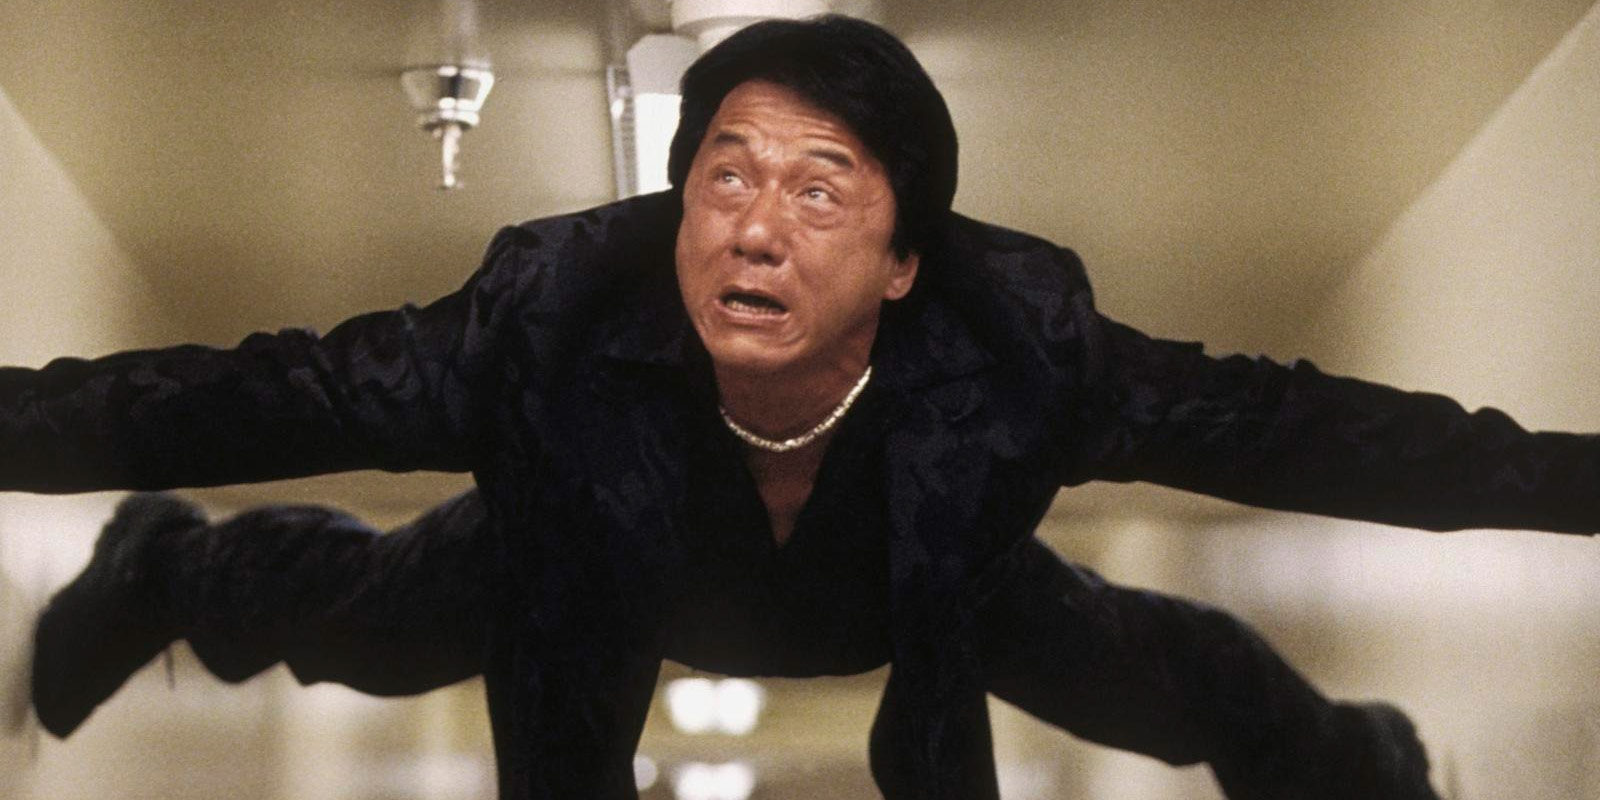 Jackie Chan recibirá el Oscar honorífico 2017 por su carrera cinematográfica